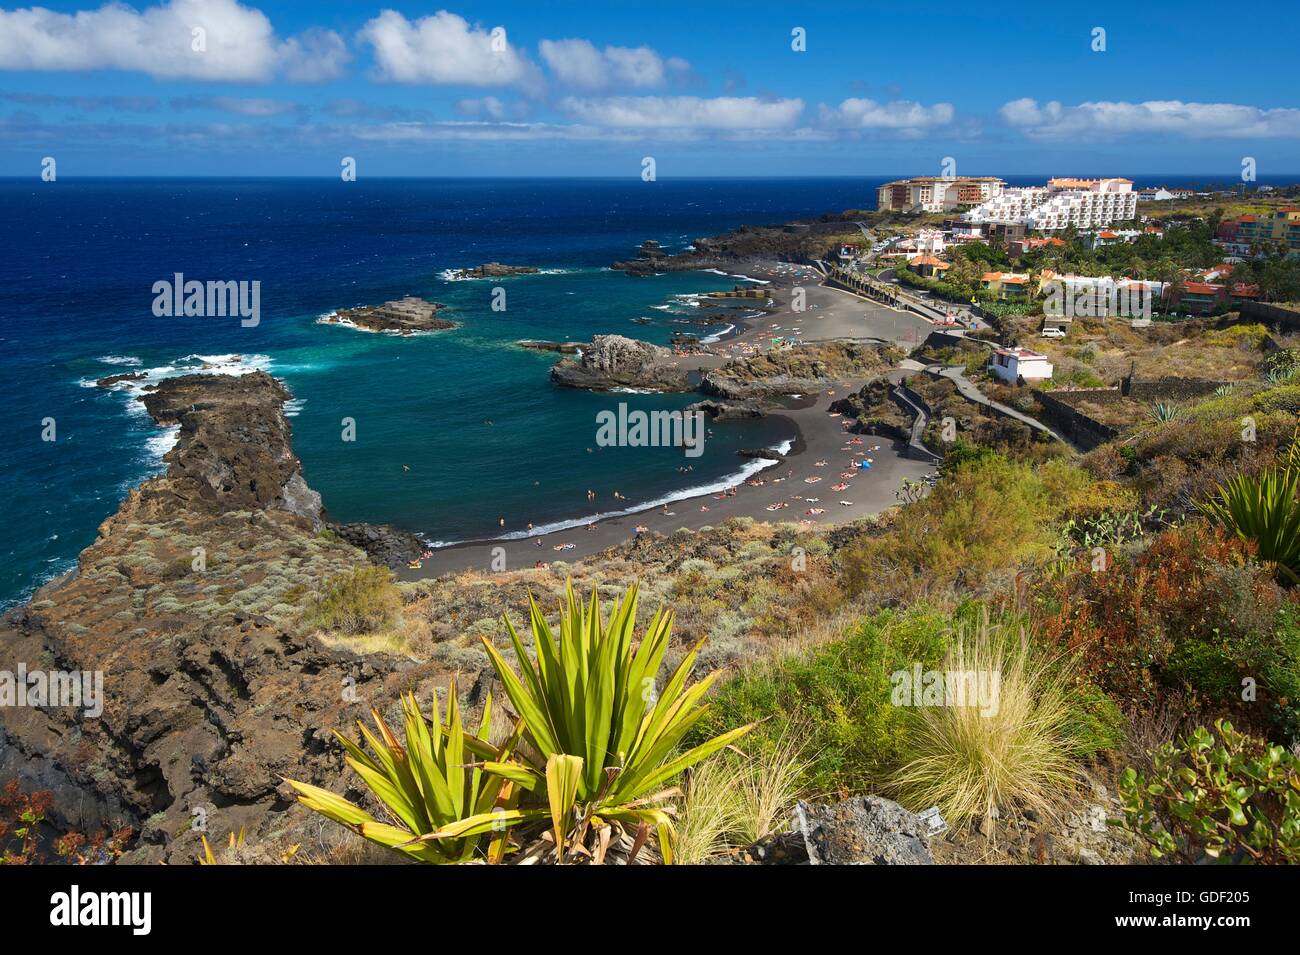 Playas de Los Cancajos, La Palma, Canaries, Spain Stock Photo